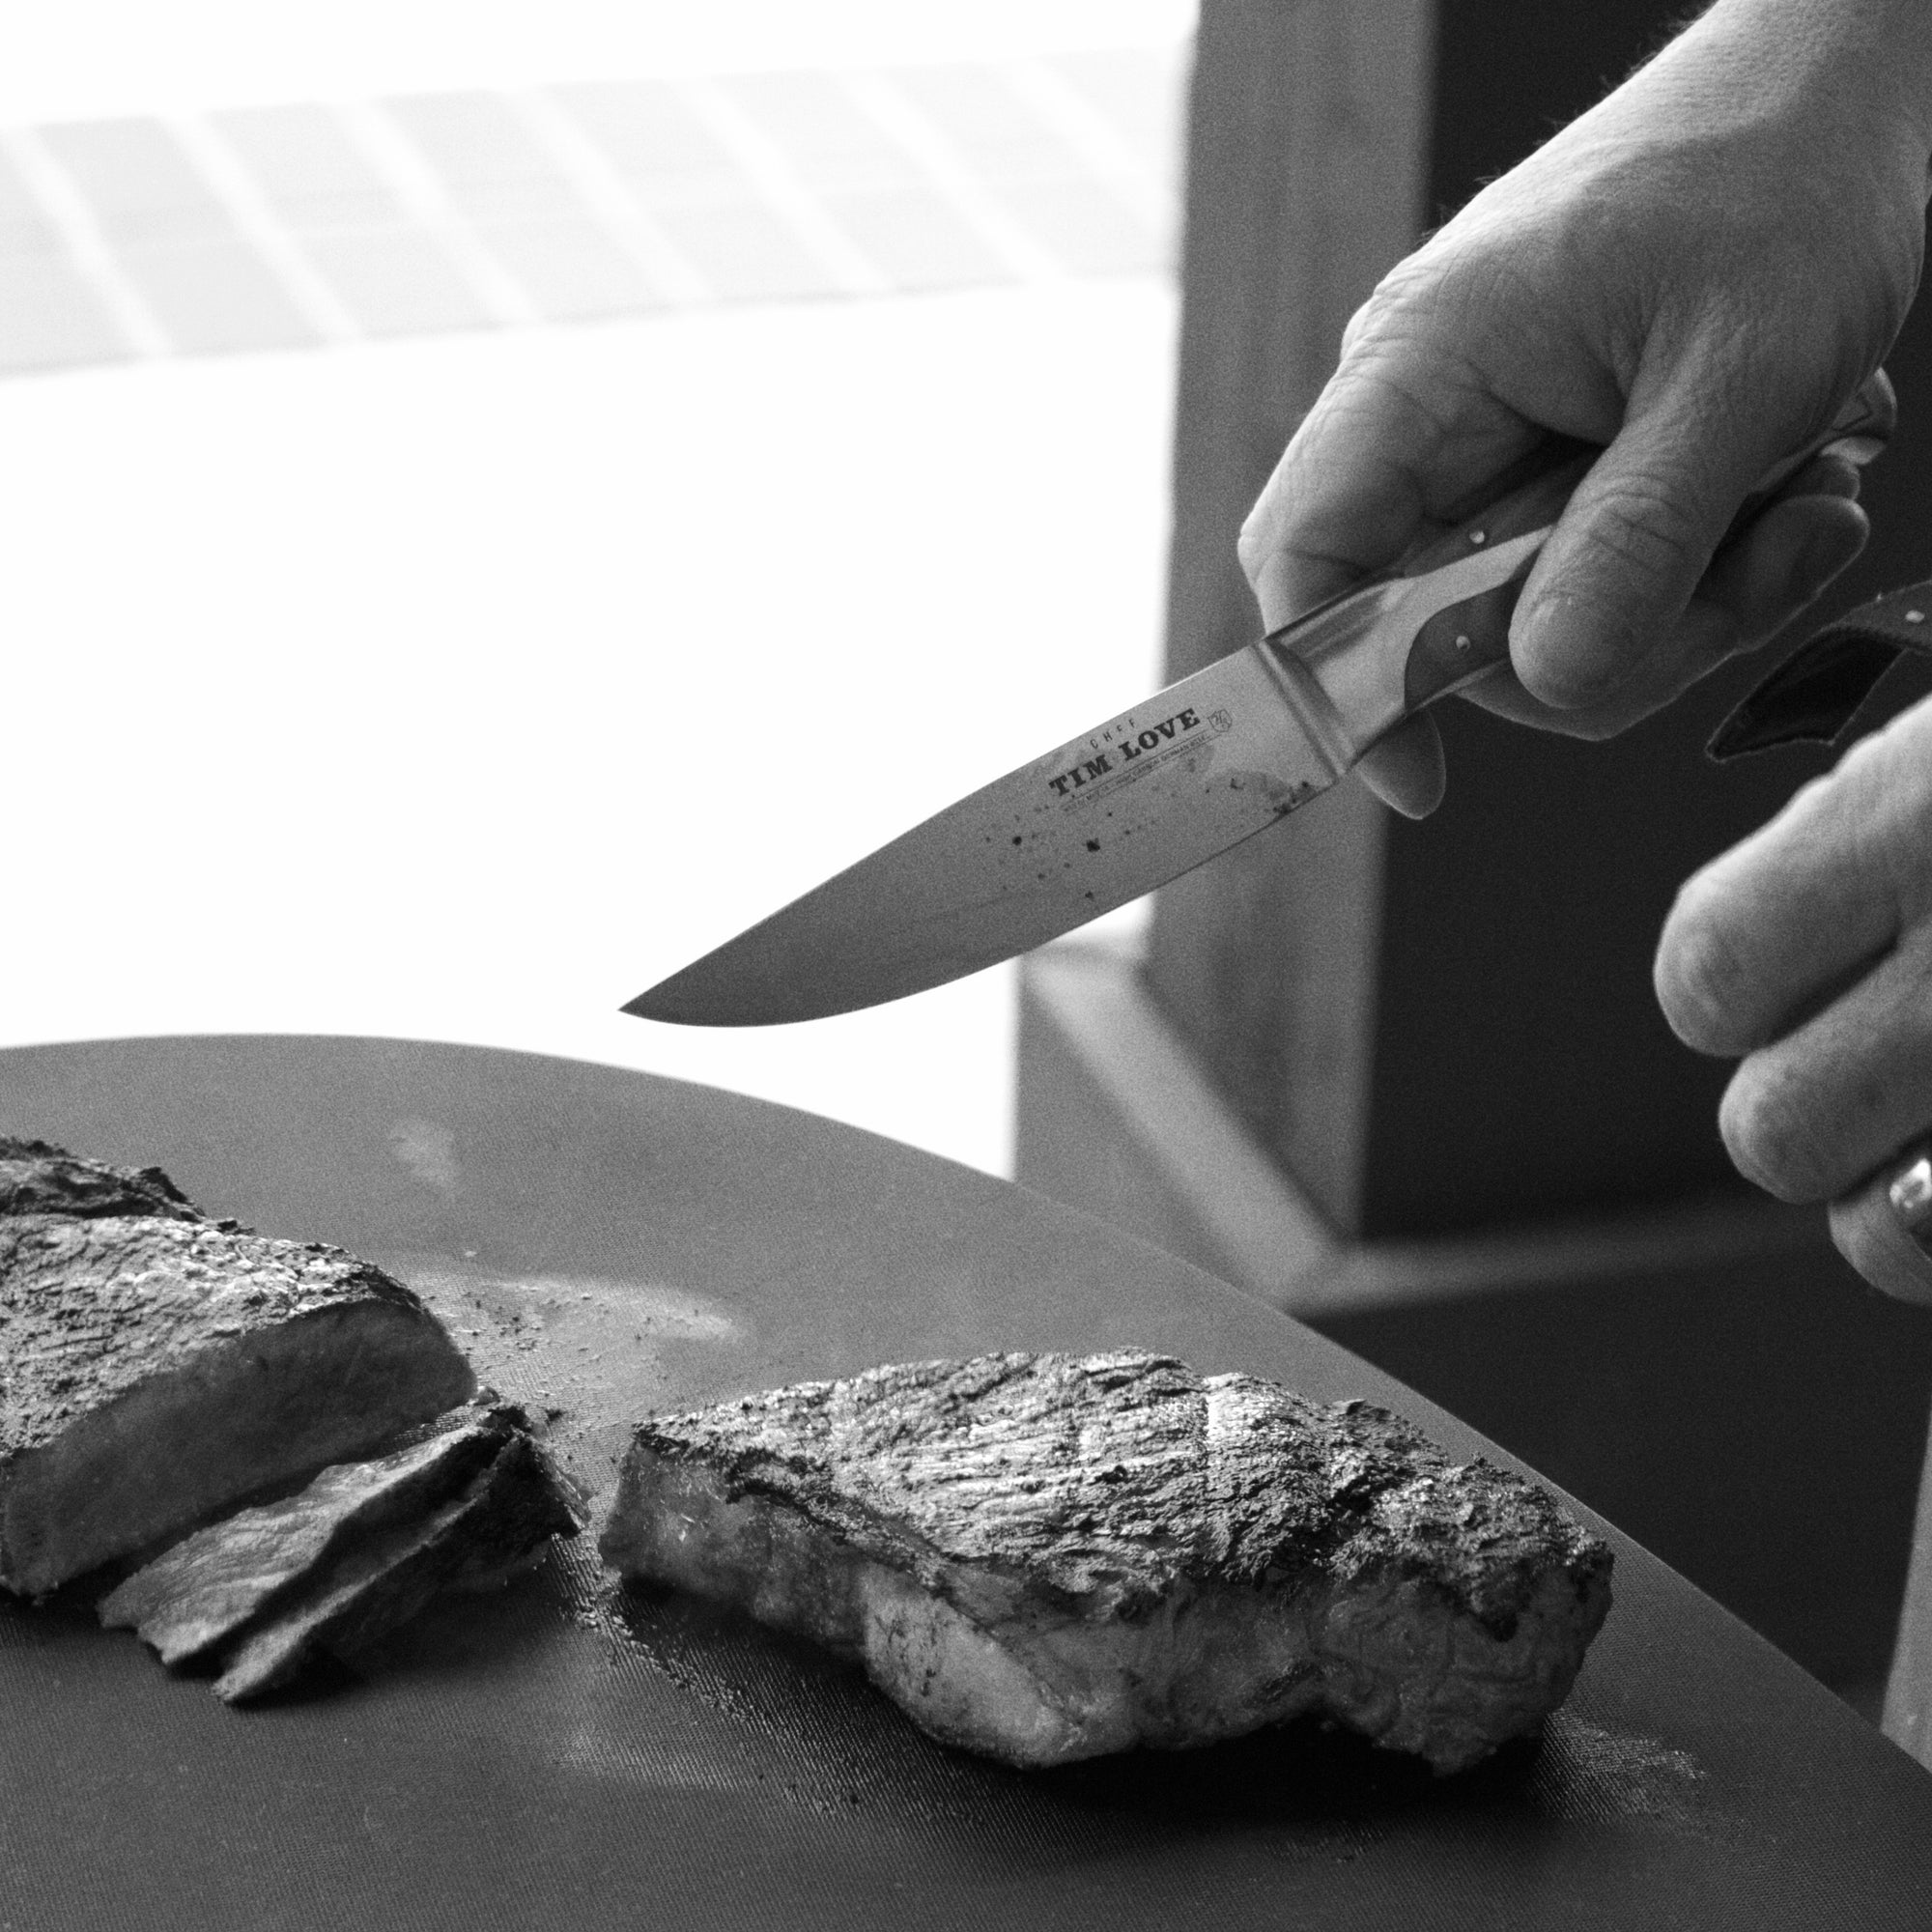 Chef Tim Love's Premium Steak Knife Set – Love Bodega